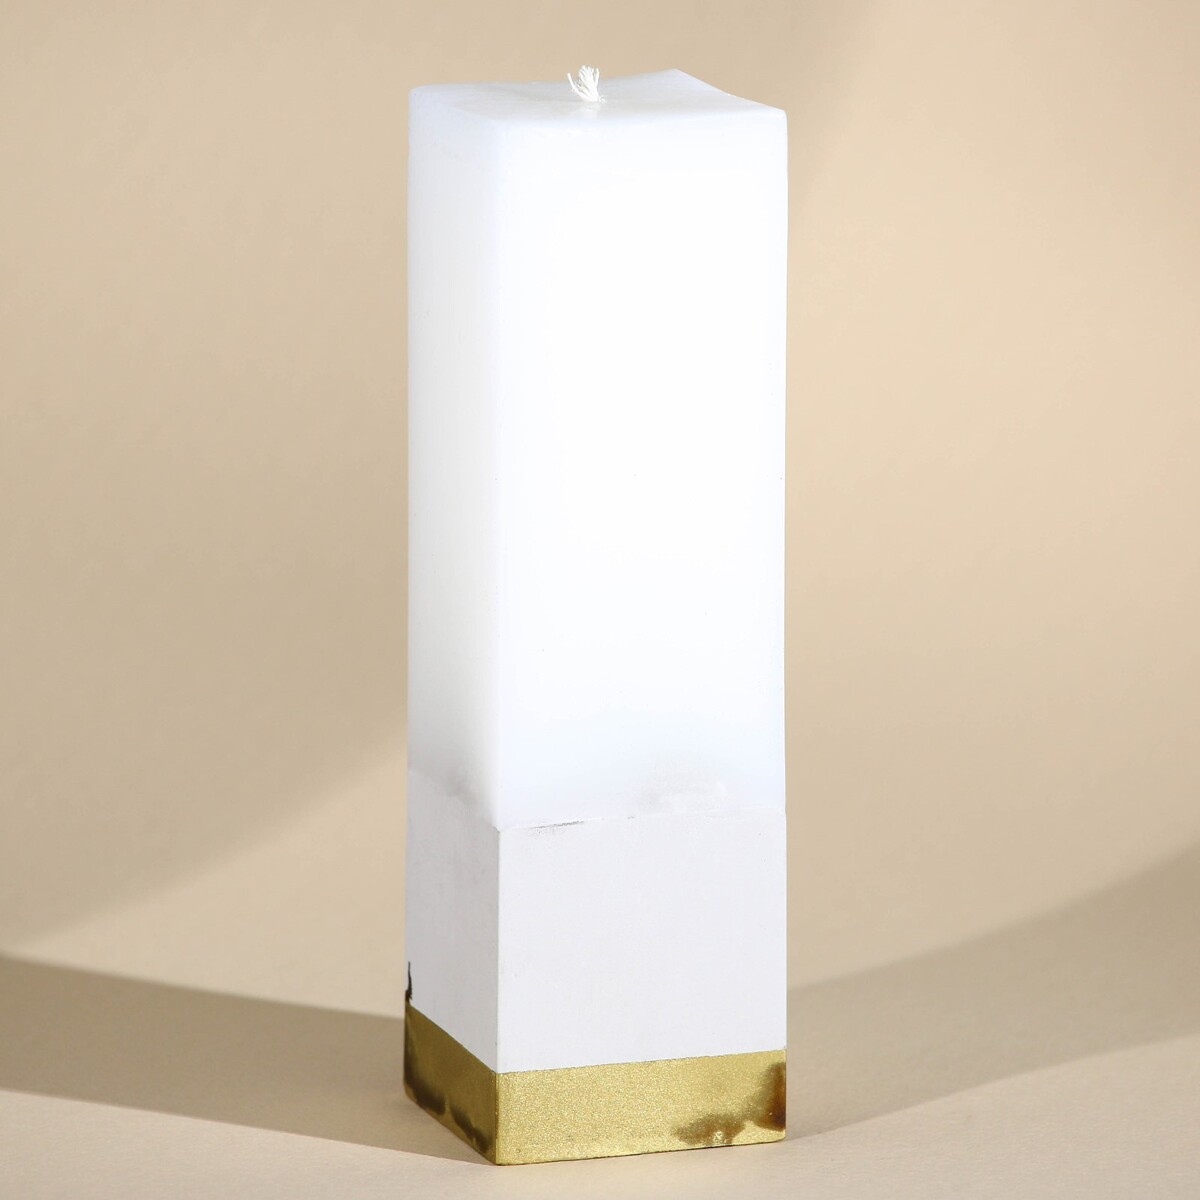 Свеча интерьерная белая с бетоном, низ золото, 5 х 5 х17,5 см свеча античная 2 2х26 см пальмовый воск белая 2 ч